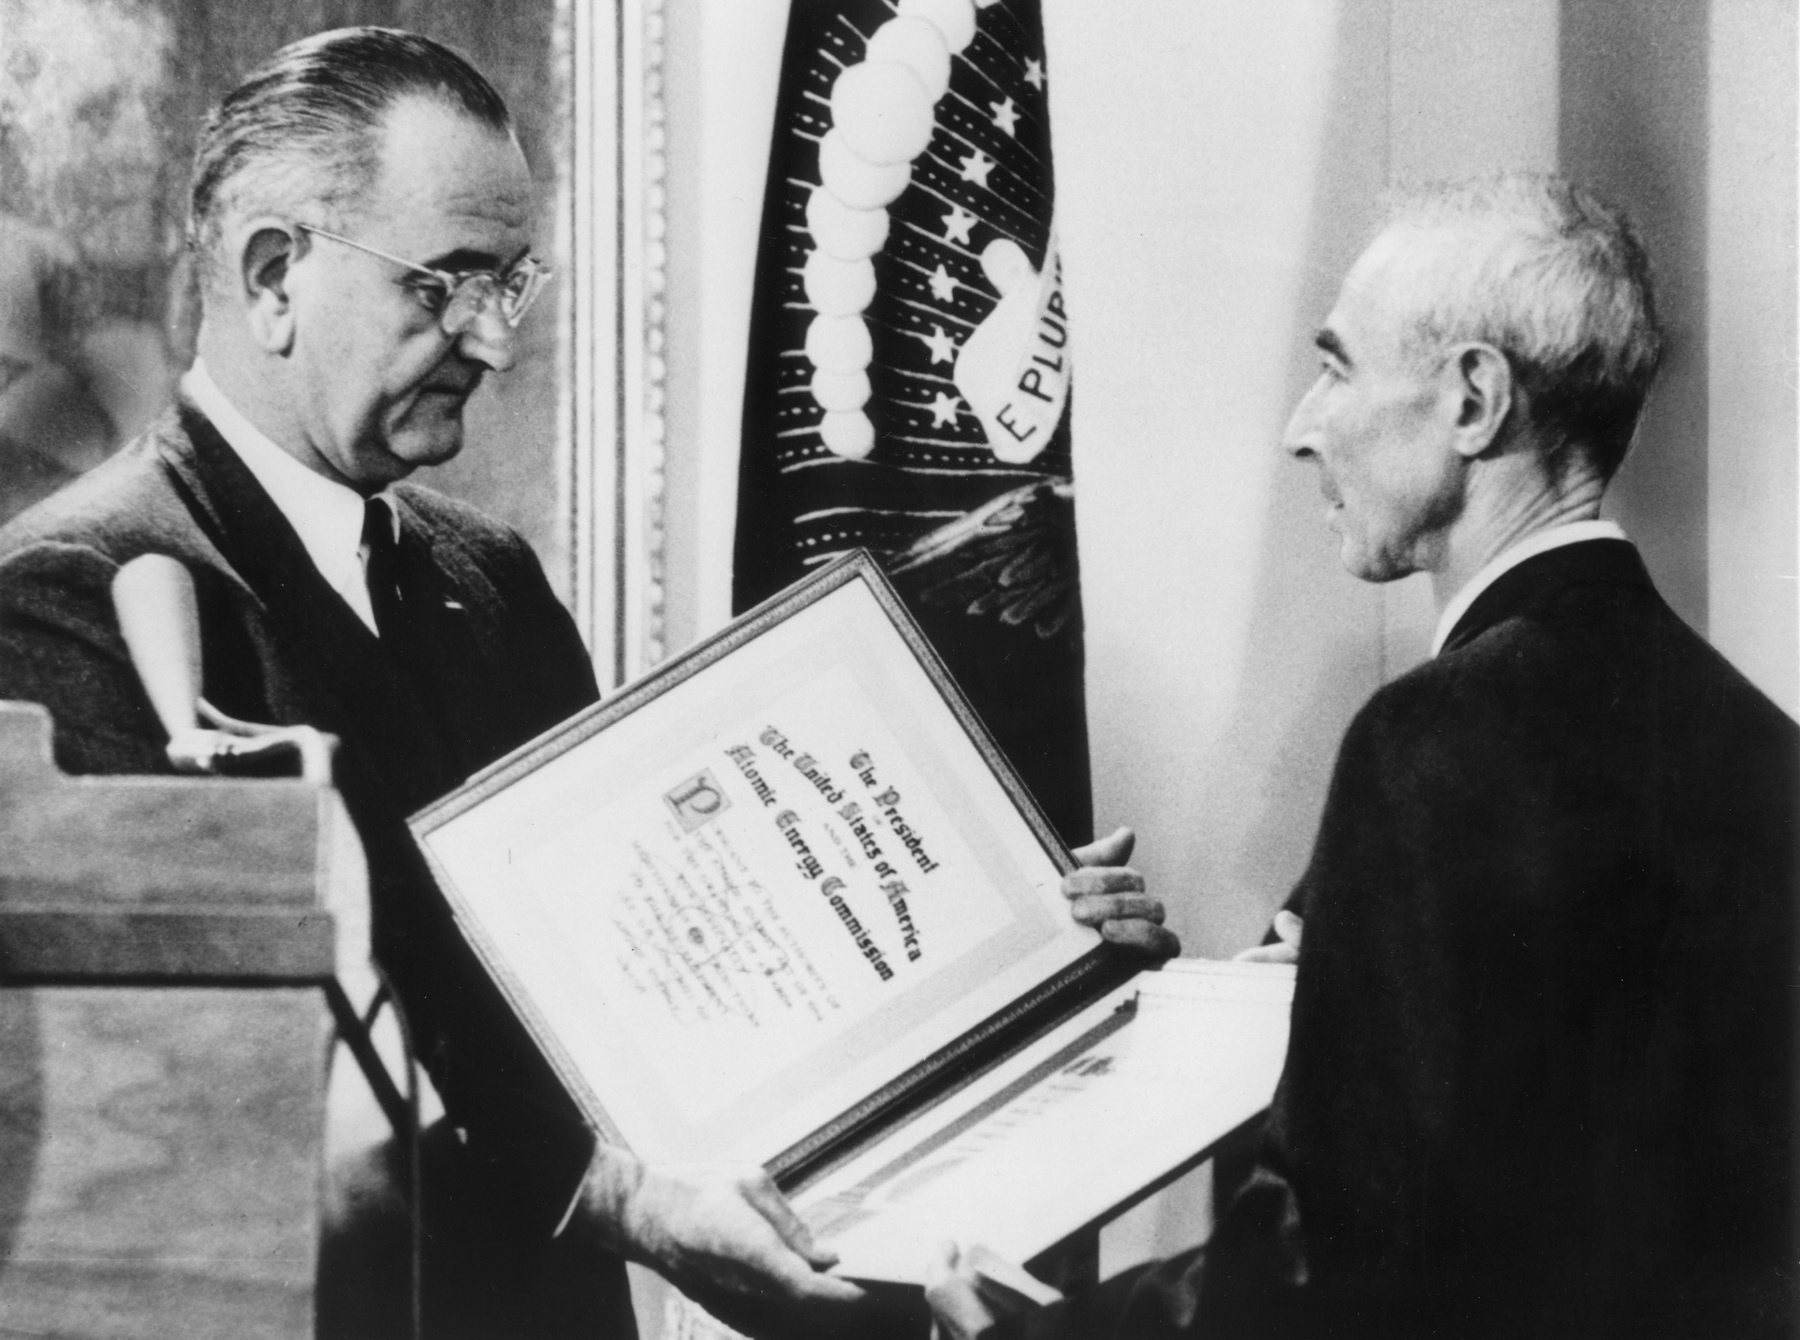 Z prezydentem Lyndonem B. Johnsonem, który wręcza Oppenheimerowi nagrodę im. Enrica Fermiego, 1963 r